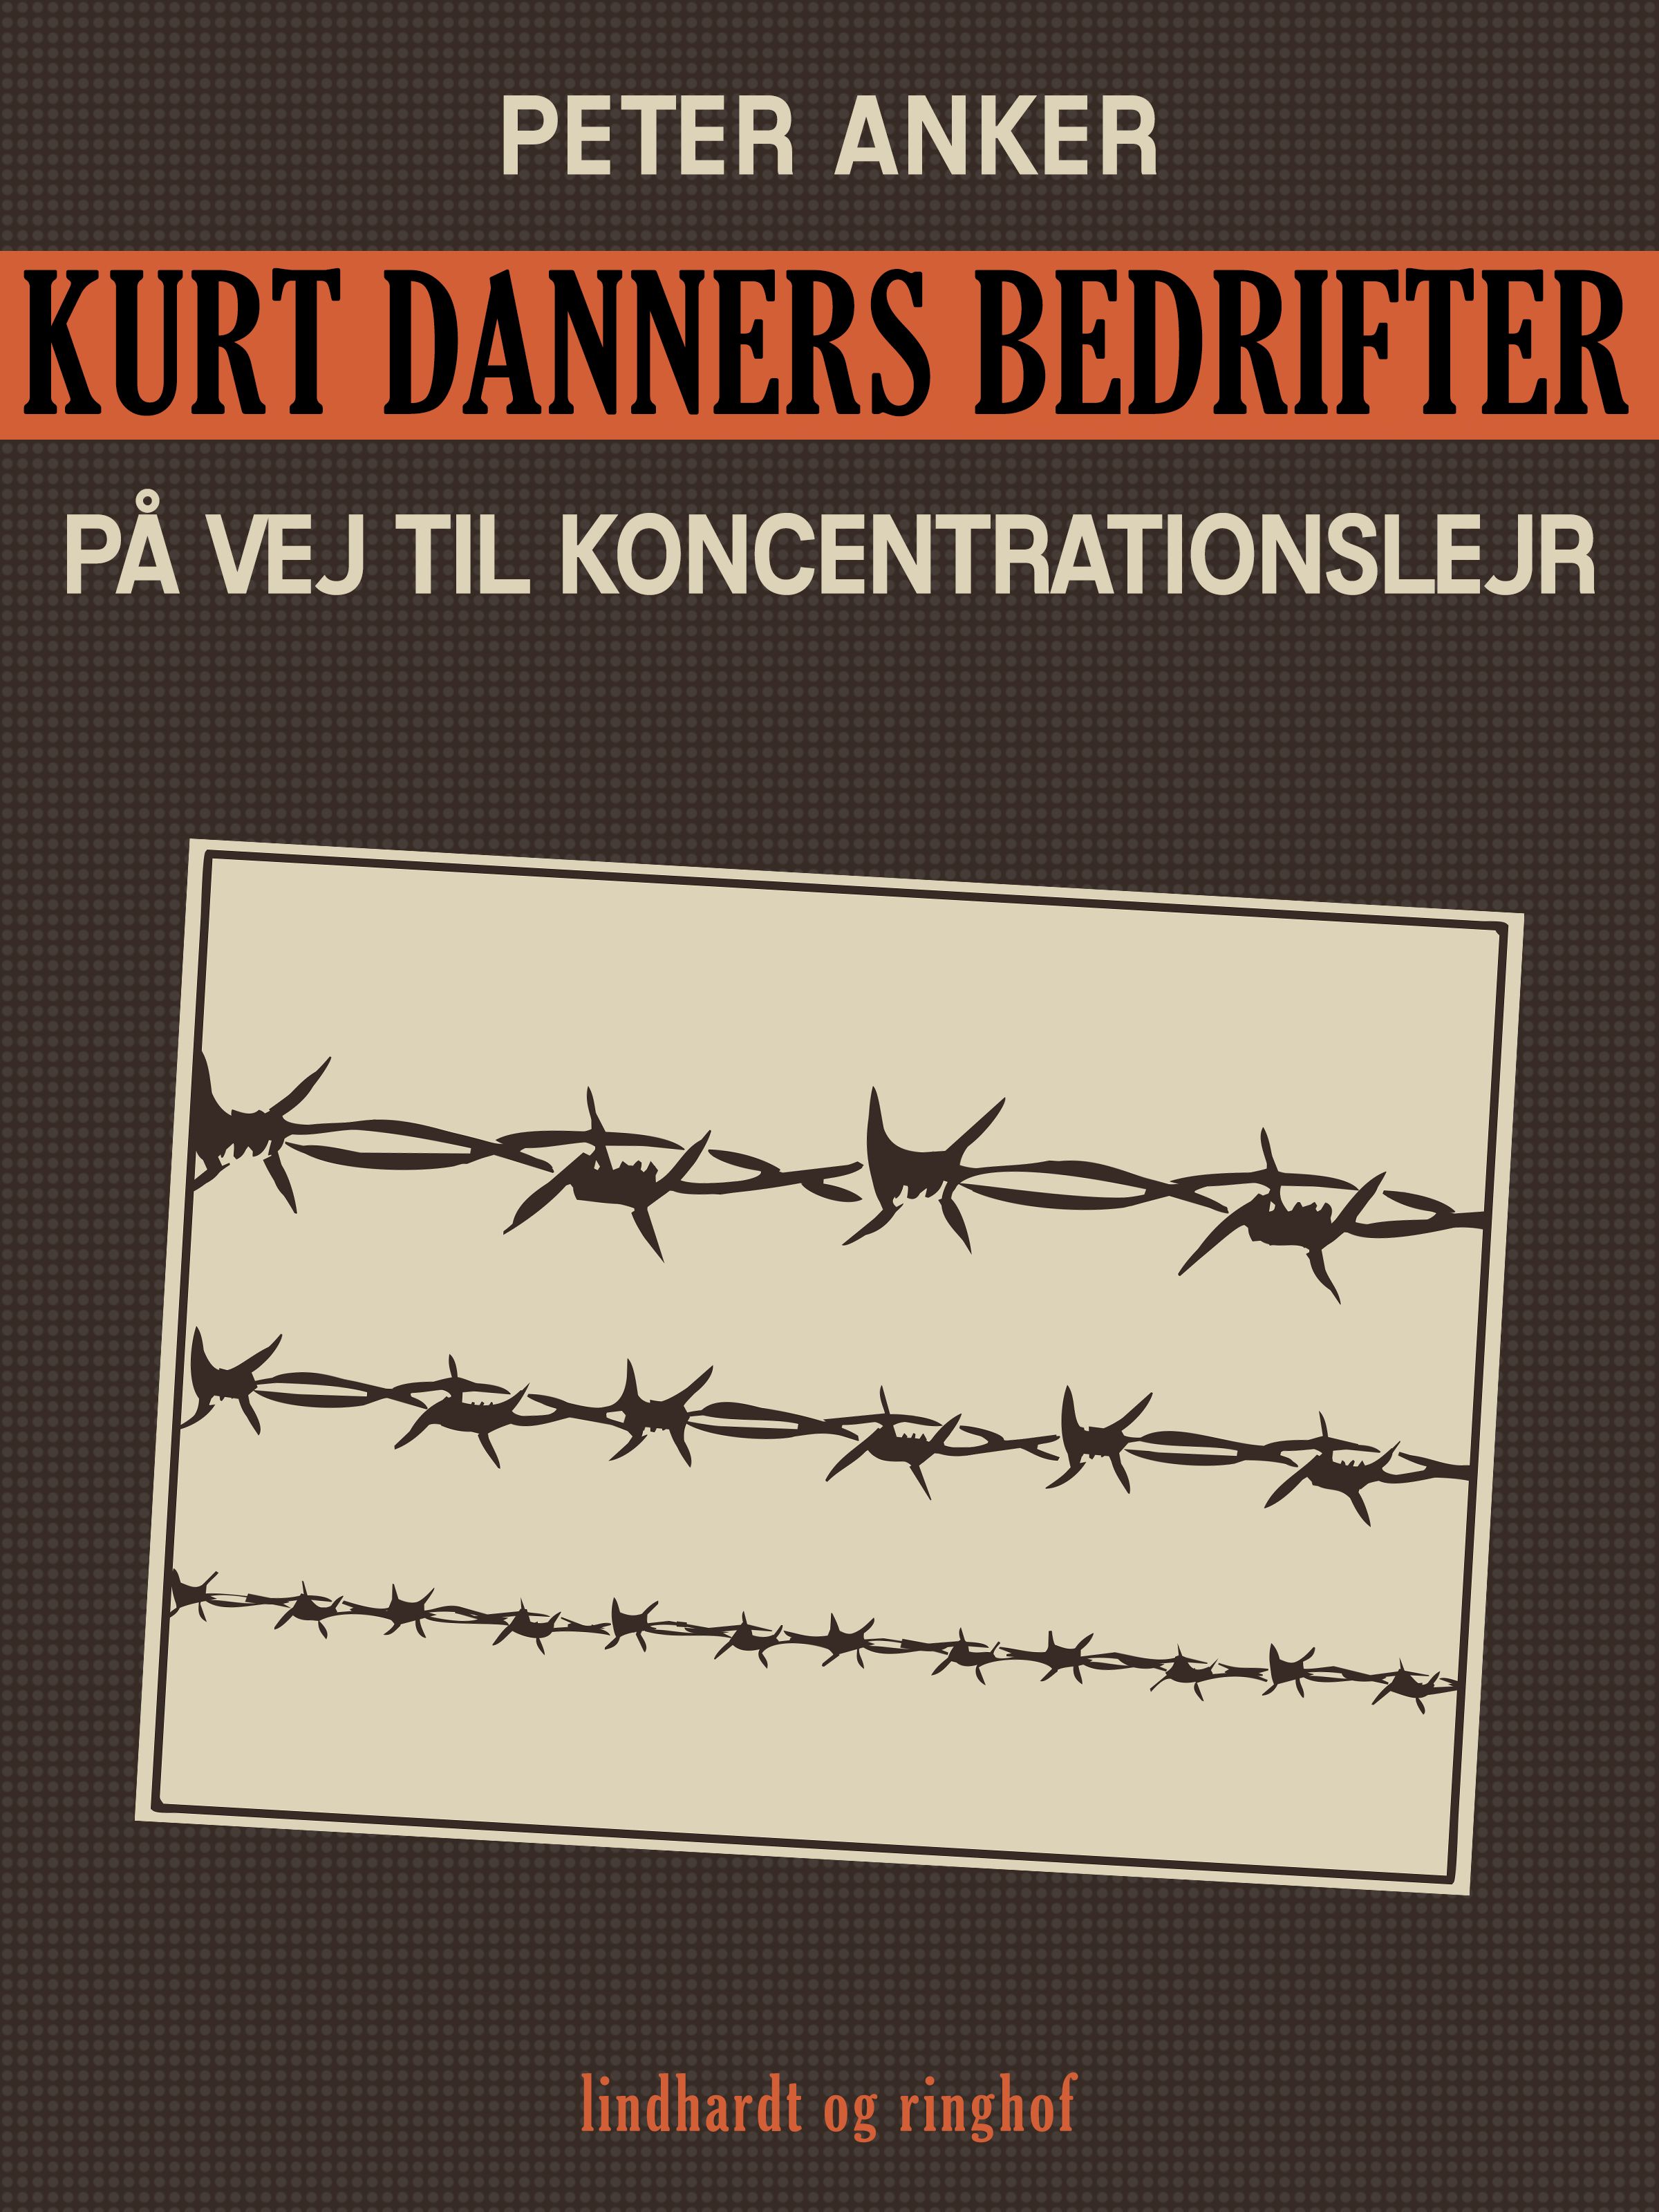 Kurt Danners bedrifter: På vej til koncentrationslejr, e-bog af Peter Anker